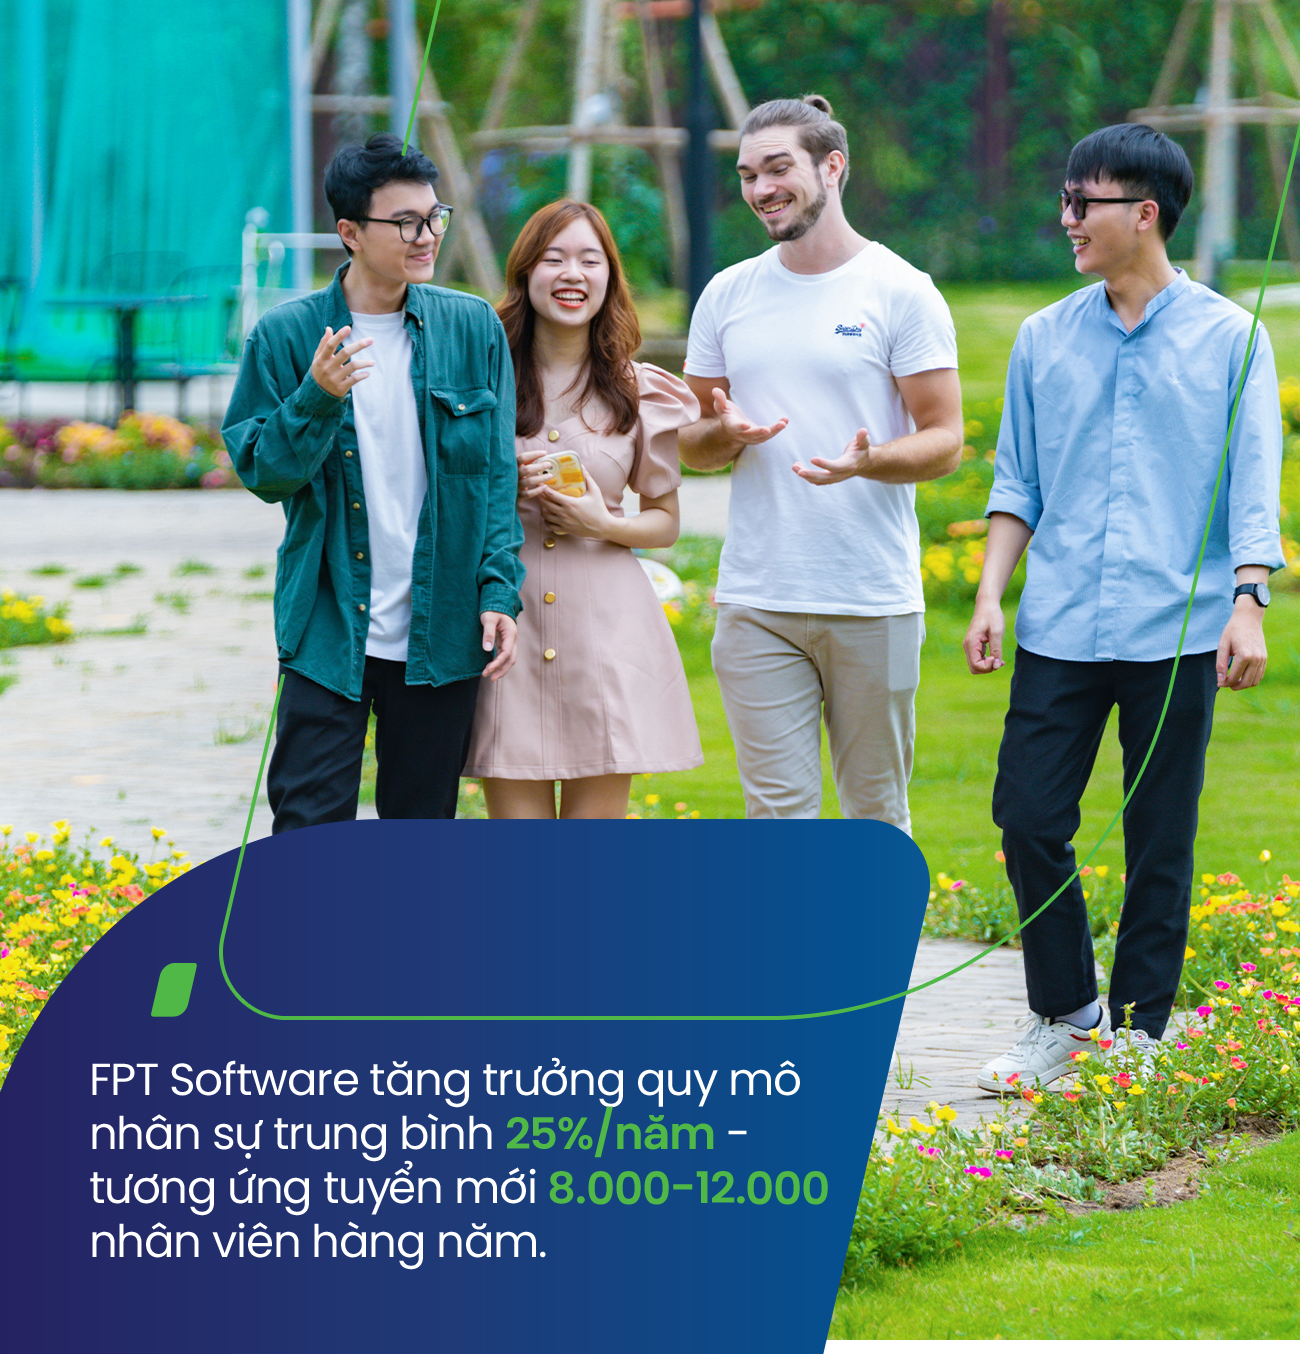 FPT Software: Từ “cú hích” hợp đồng 2 triệu USD tới vị thế tiên phong sau 19 năm phát triển tại thị trường phía Nam - Ảnh 5.